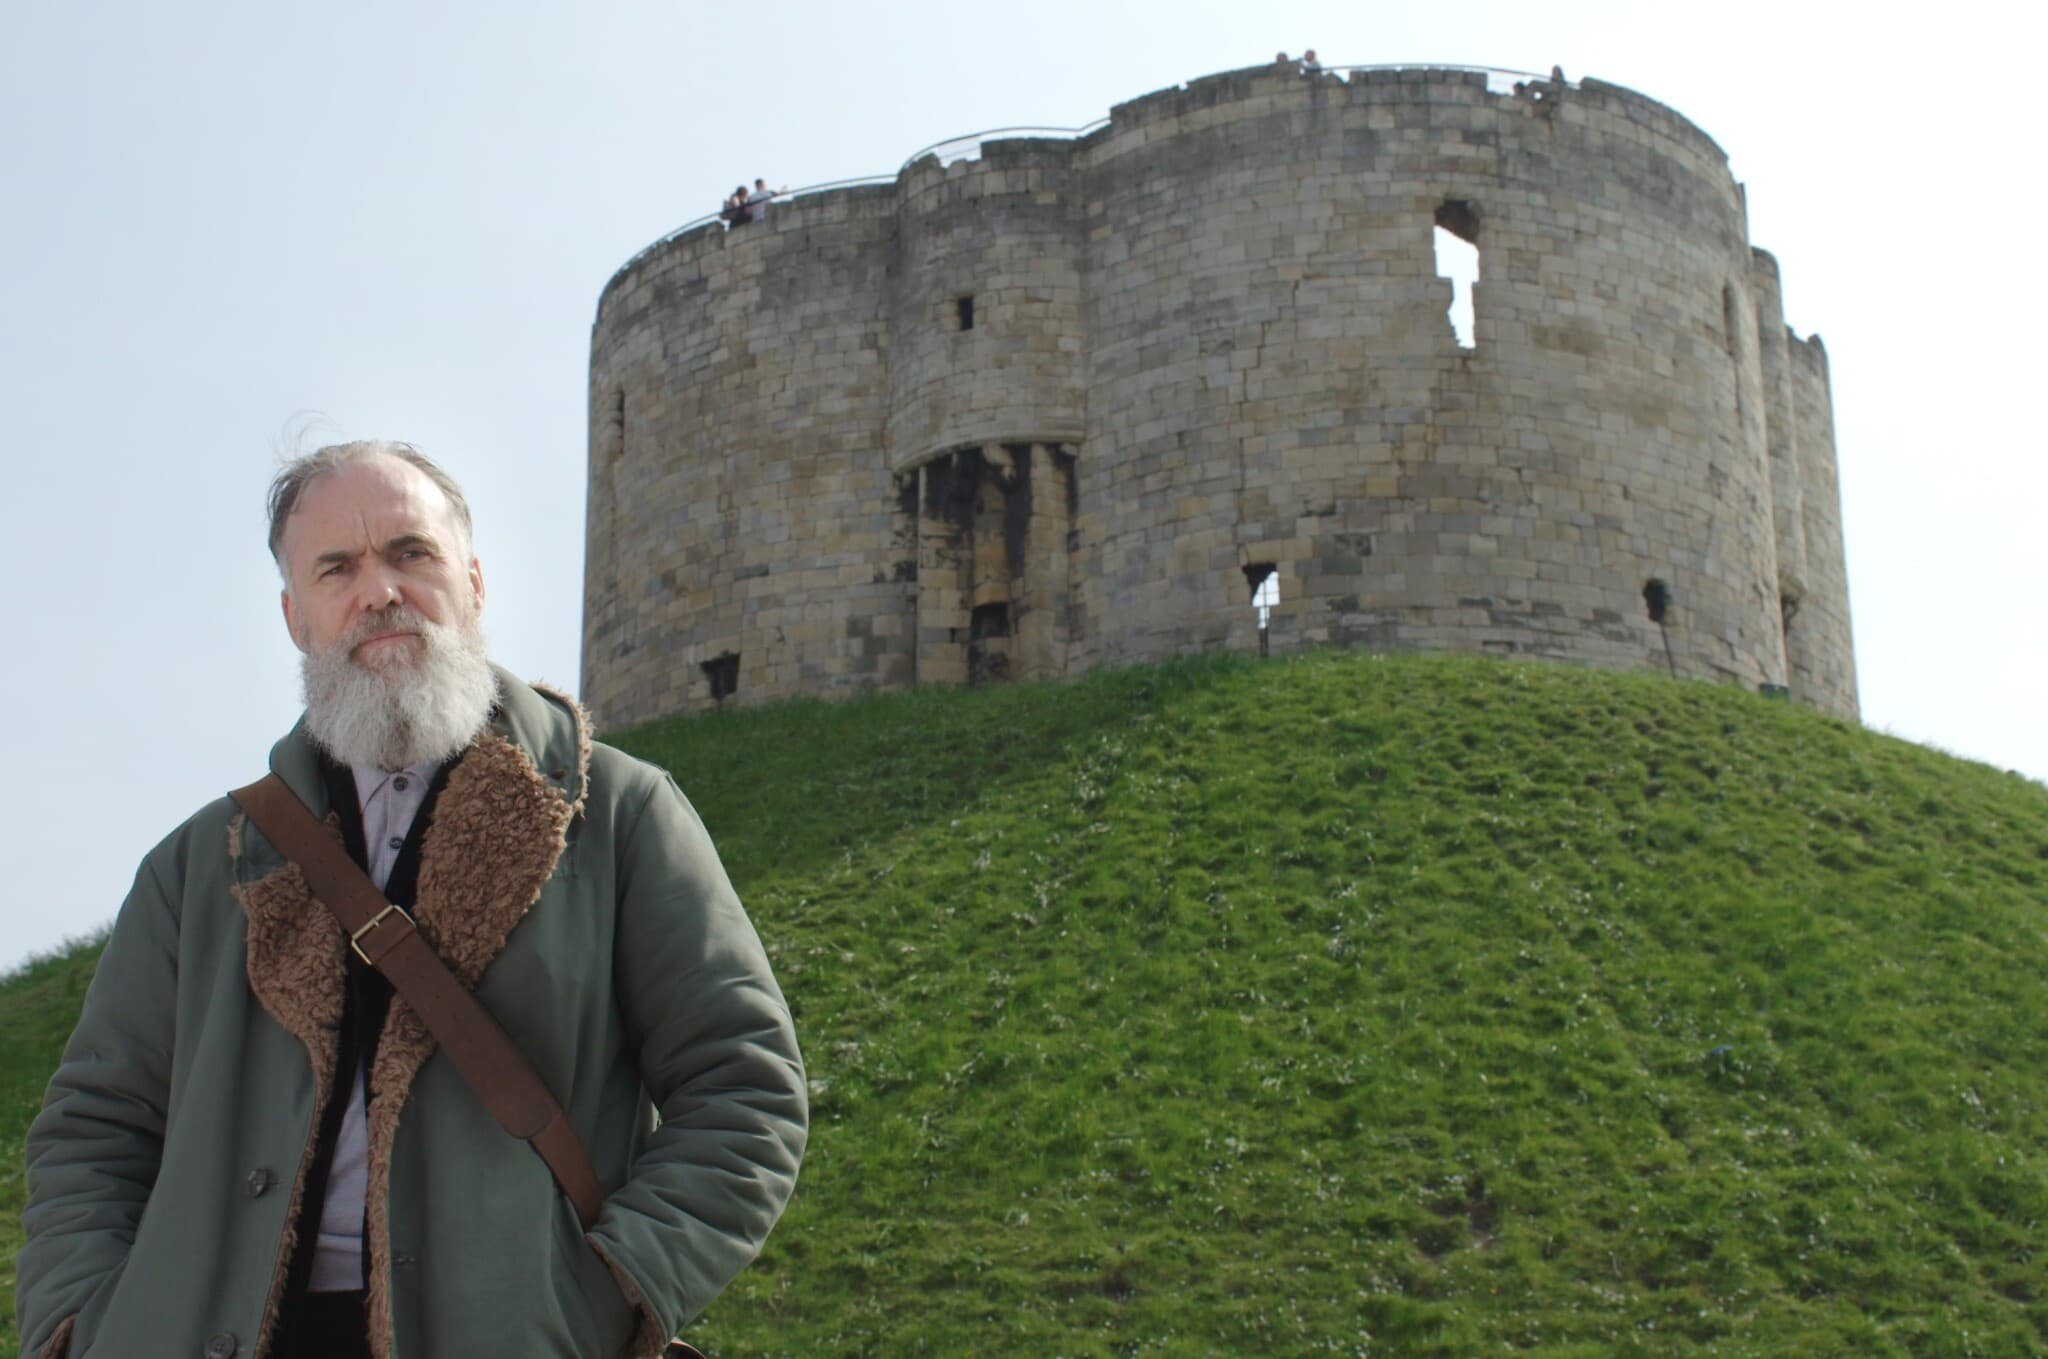 יוצר הקולנוע דיוויד וילקינסון בטירה ביורק, שם נרצחה כל הקהילה היהודית ב־1190 (צילום: באדיבות המצולם)